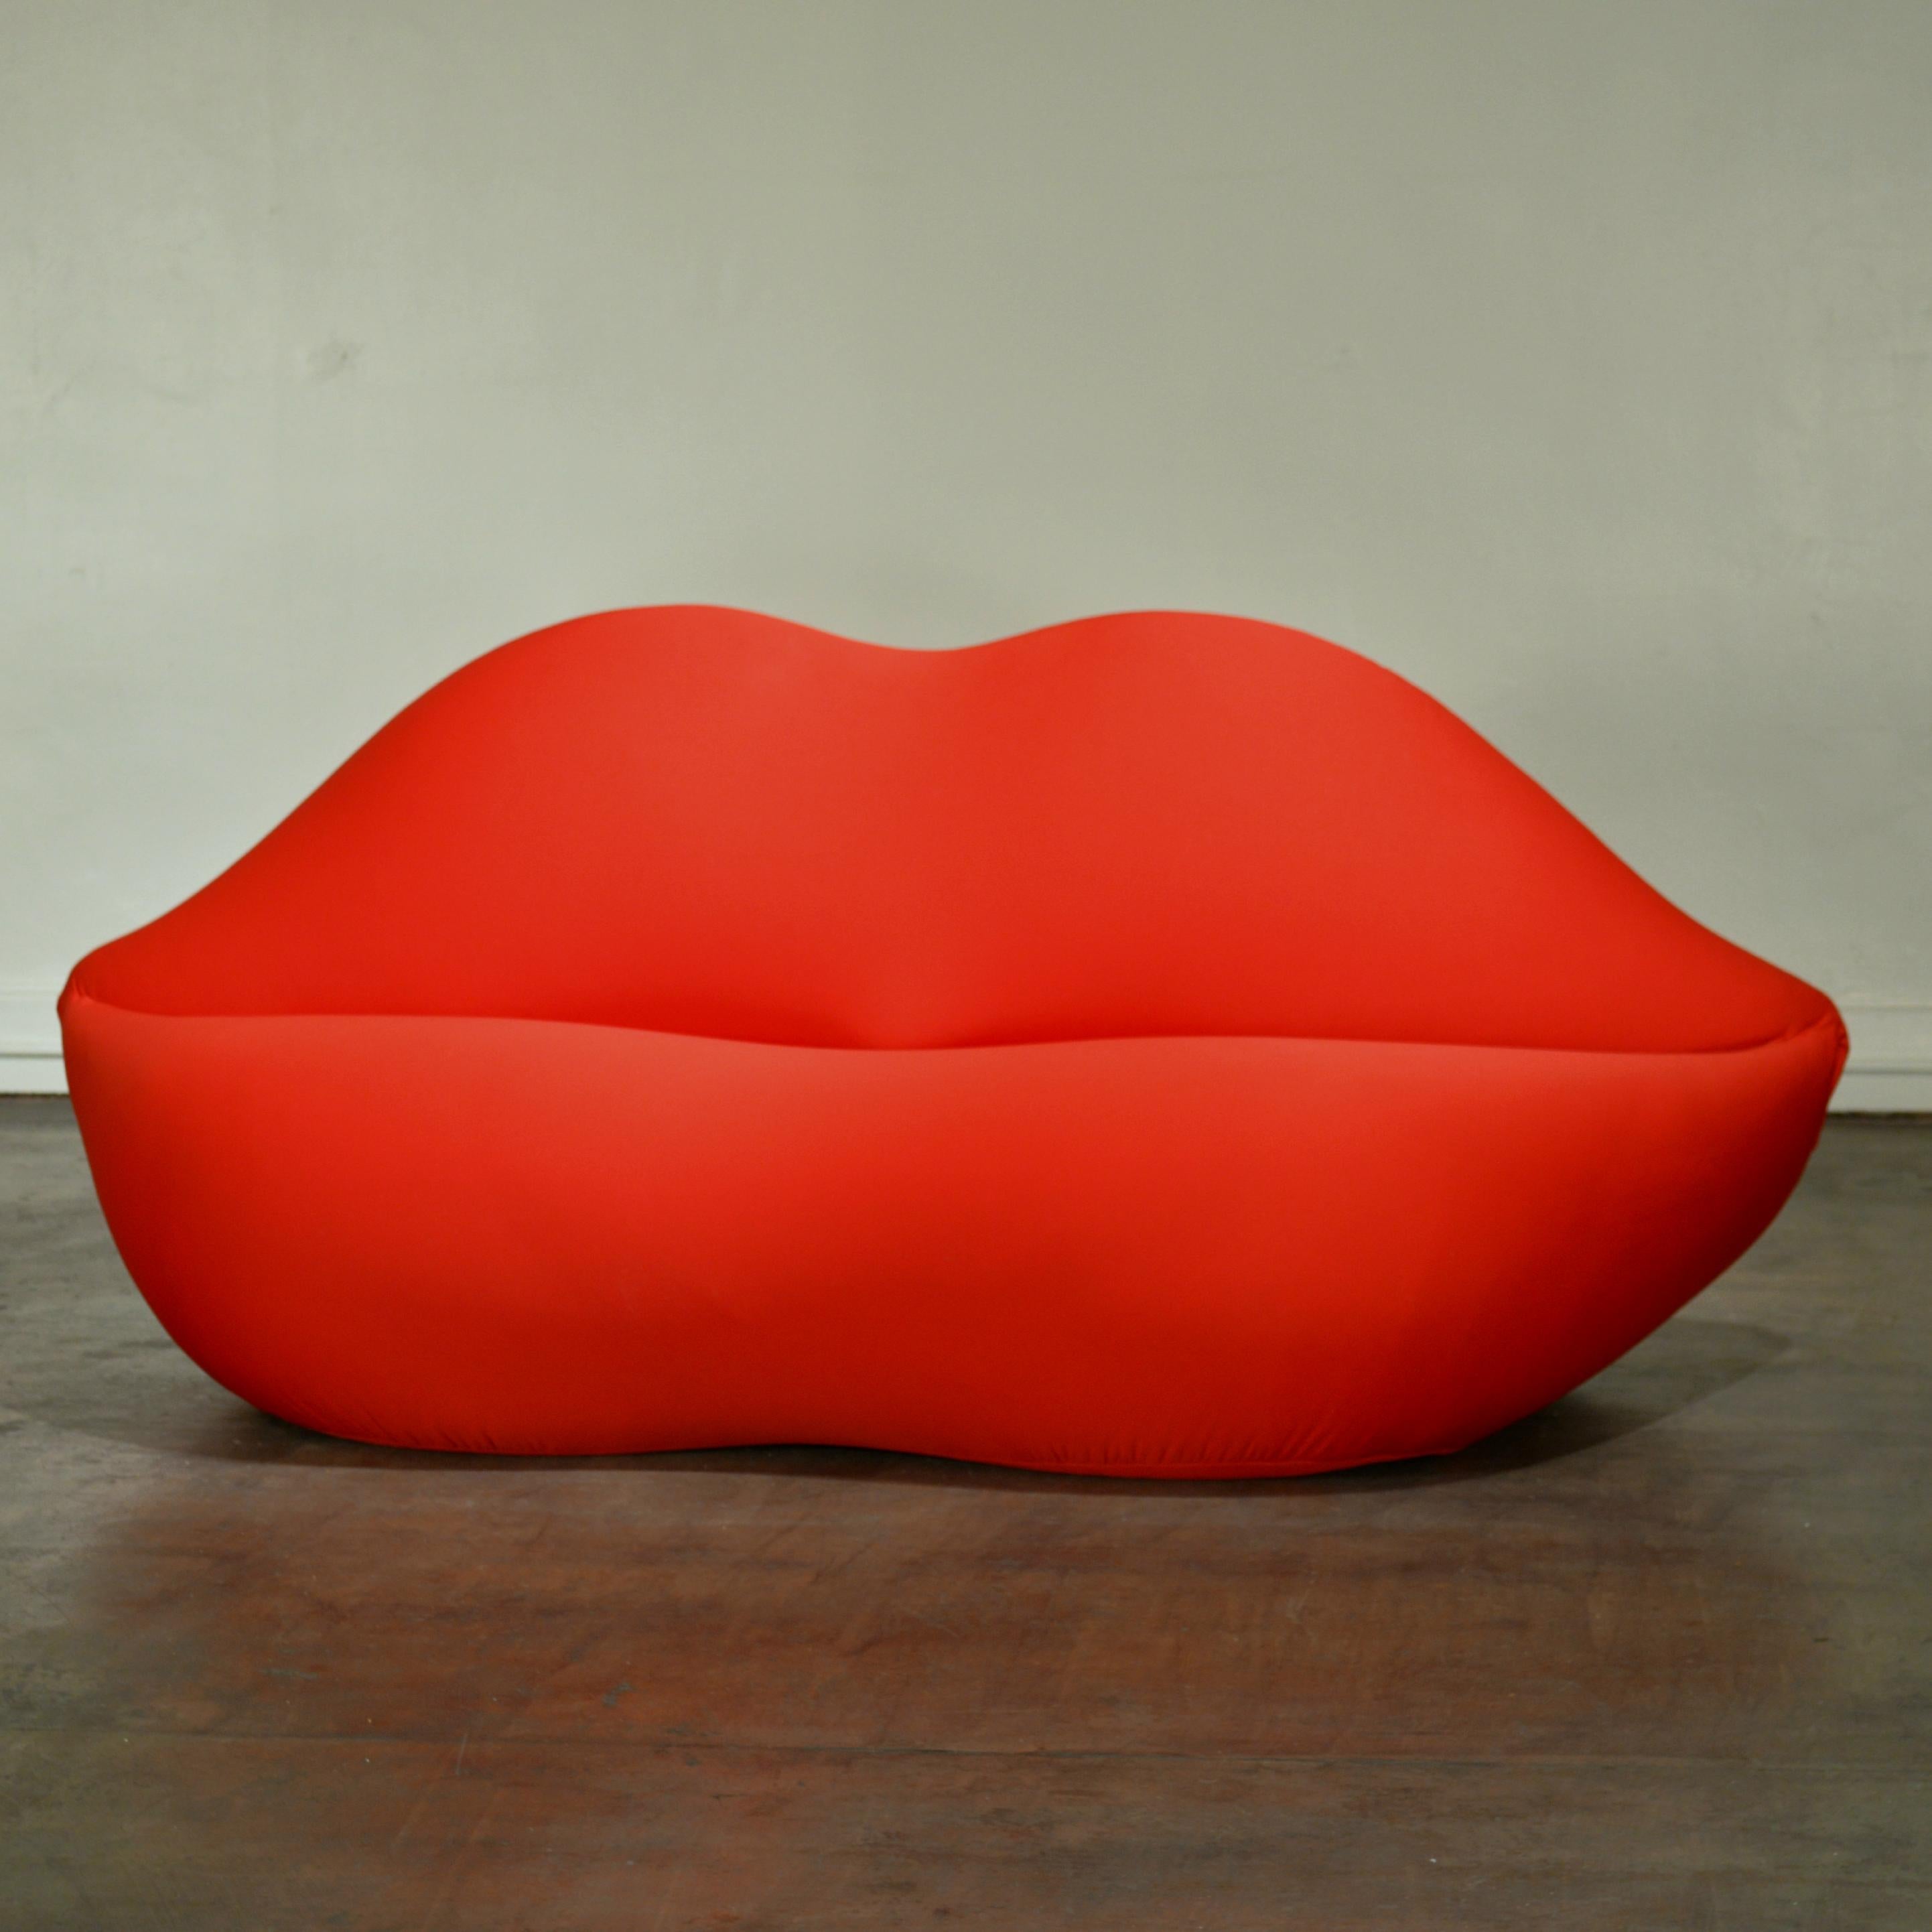 1972 als Hommage an Salvador Dalis von Mae West inspiriertes Sofa entworfen, ist 